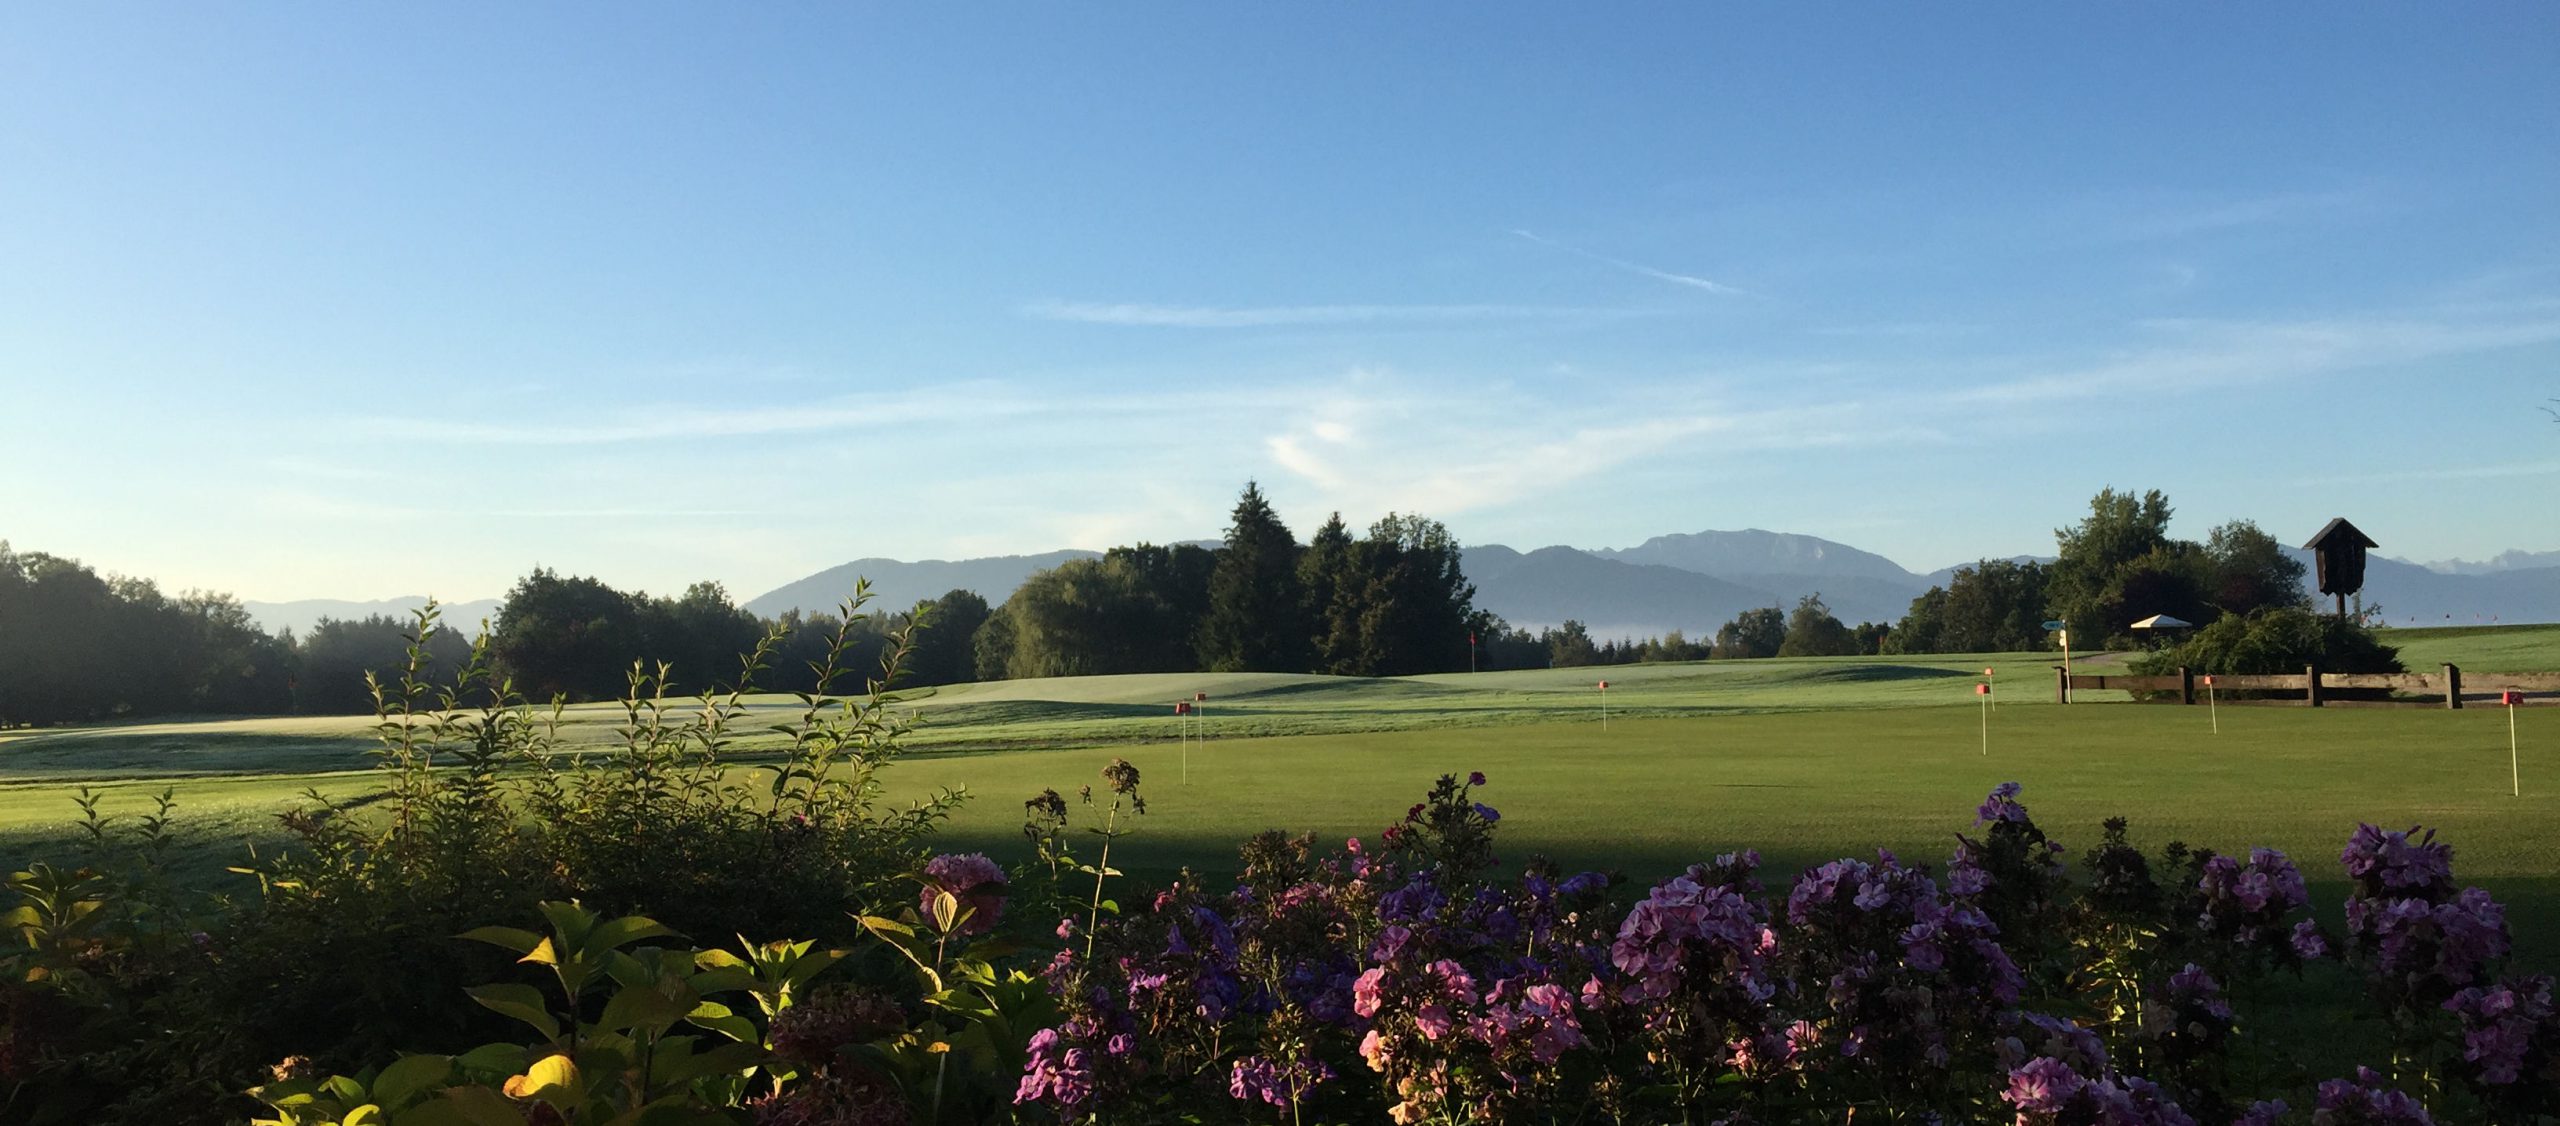 Golfclub Beuerberg - eine der schönsten Golfanlagen Deutschlands